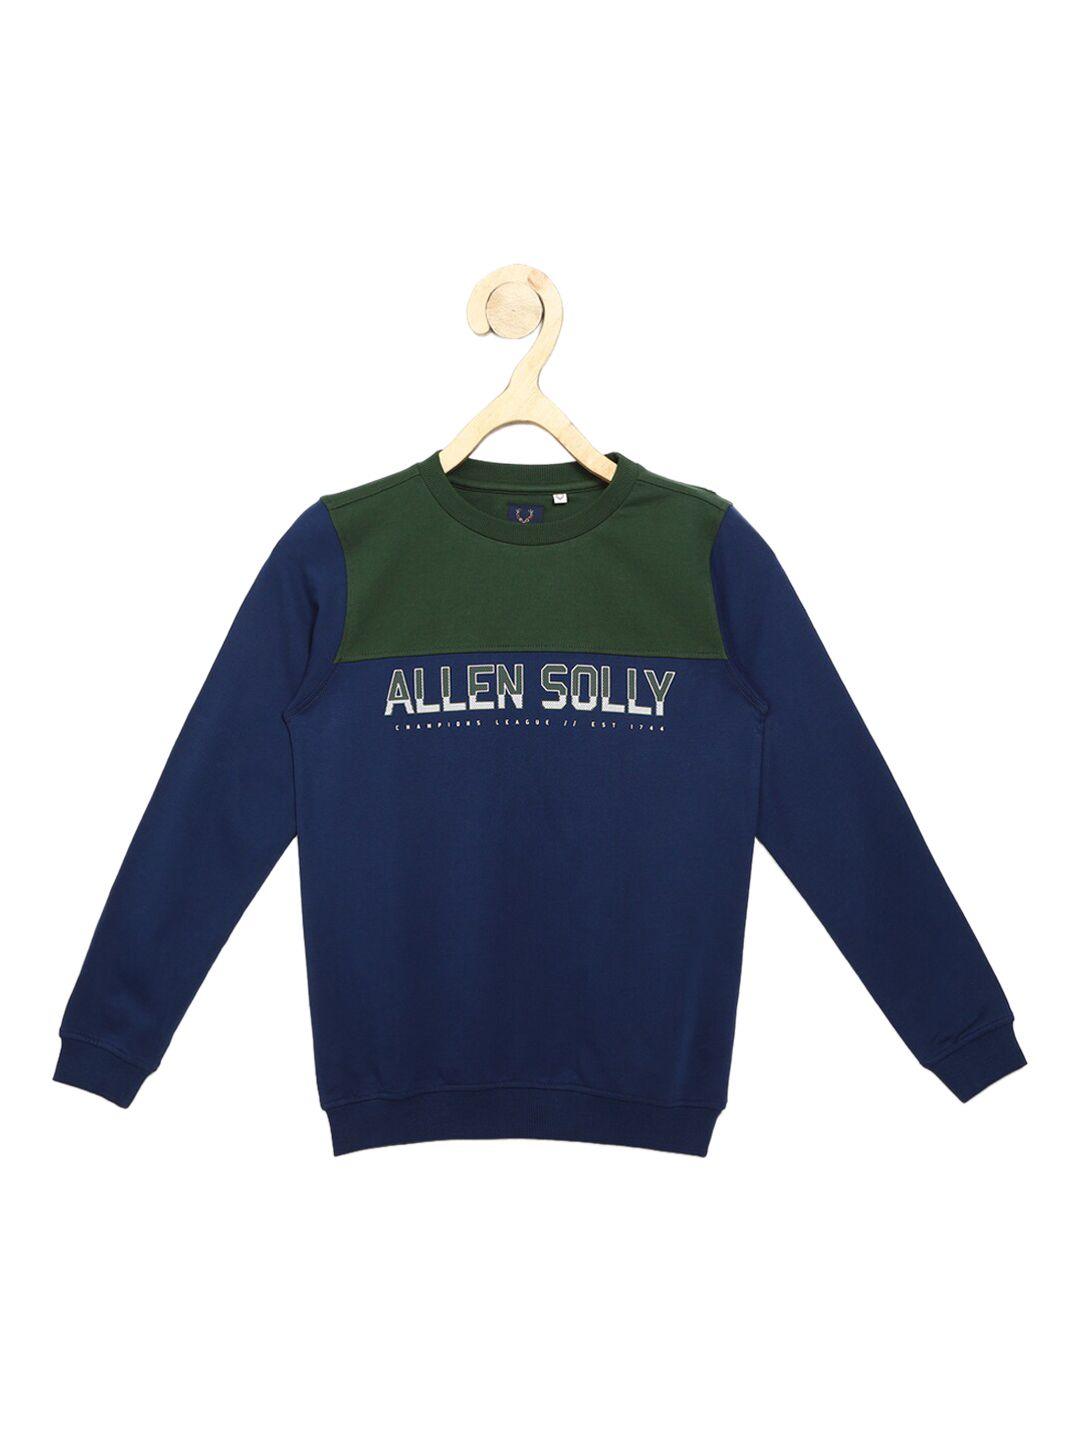 allen solly junior boys navy blue& green colourblocked sweatshirt